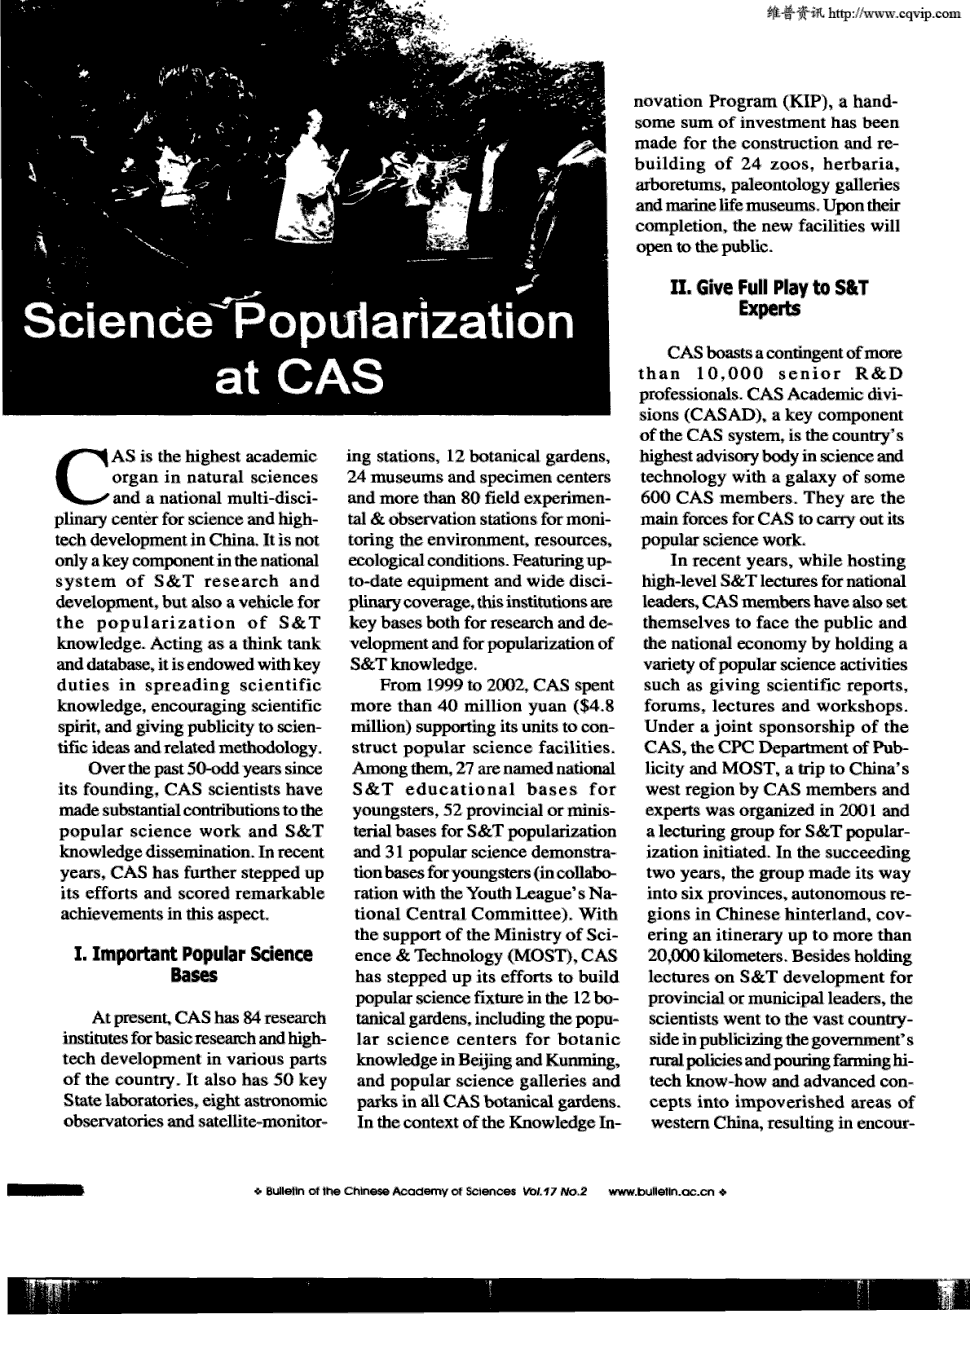 期刊science popularization at cas cas 在中国是在为科学和高技术